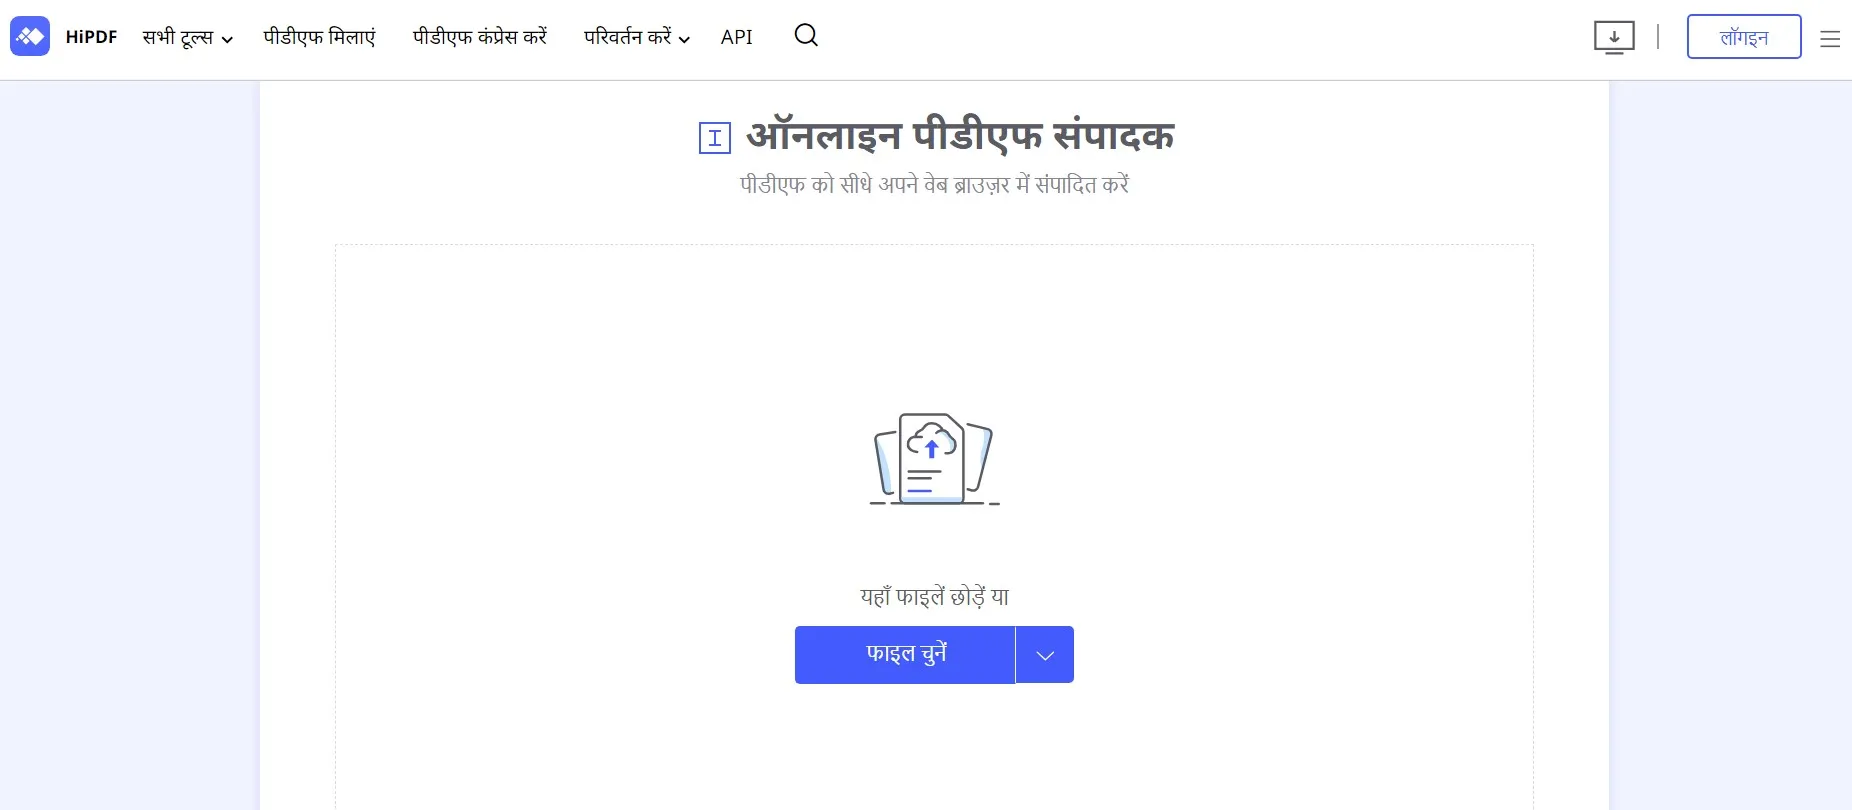 hindi pdf editor hipdf